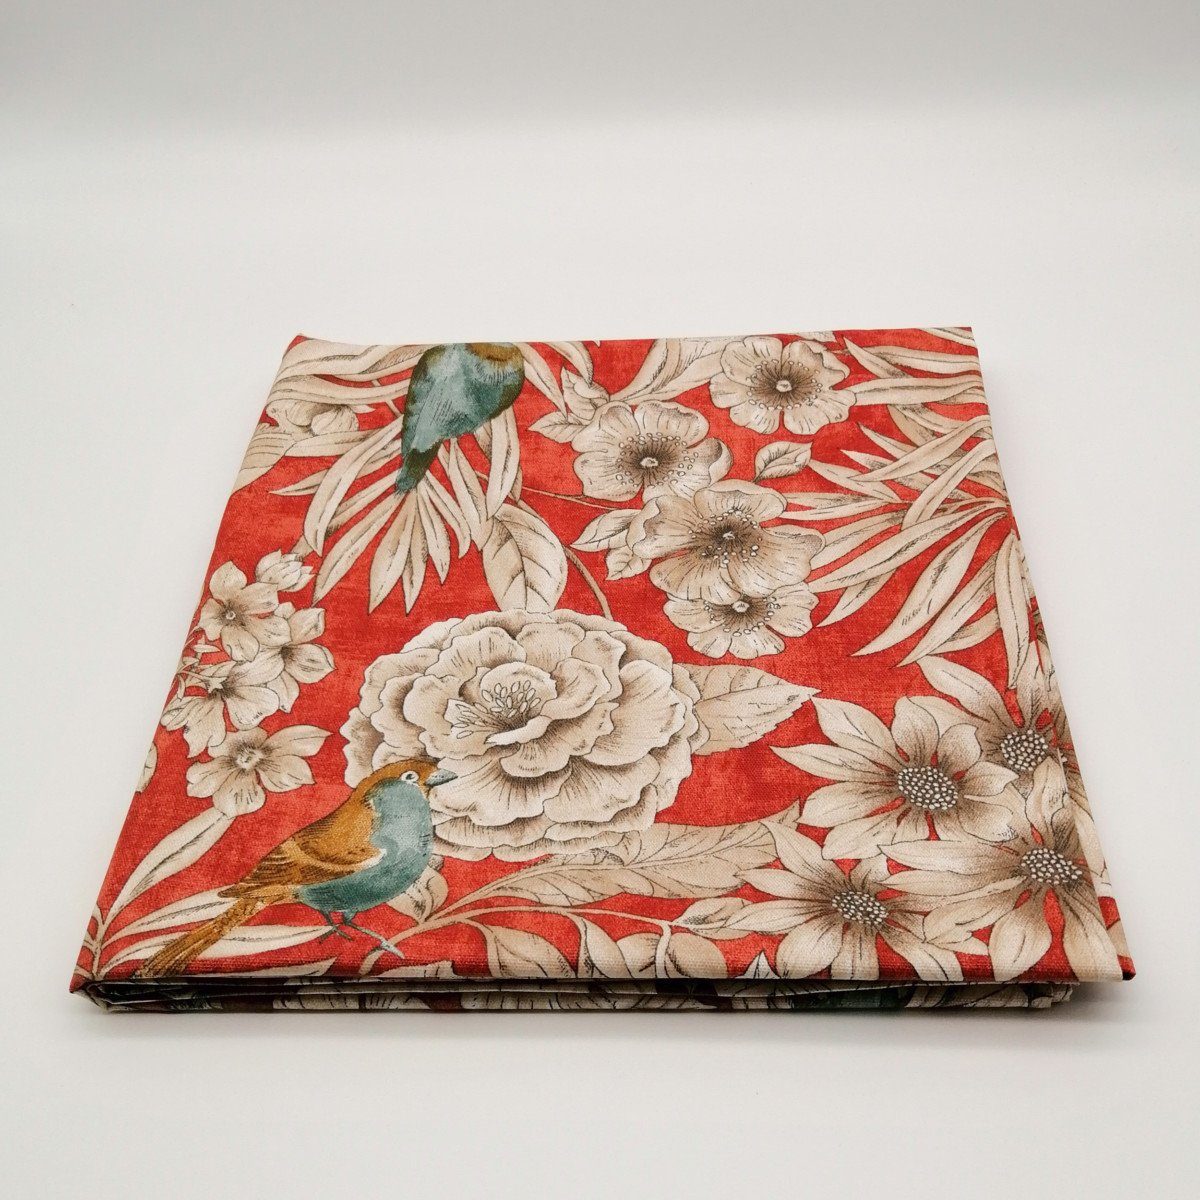 Mit Liebe Tischdecke Baumwolle: beschichtete Tischdecke Rot dekoriert Blumenparadies